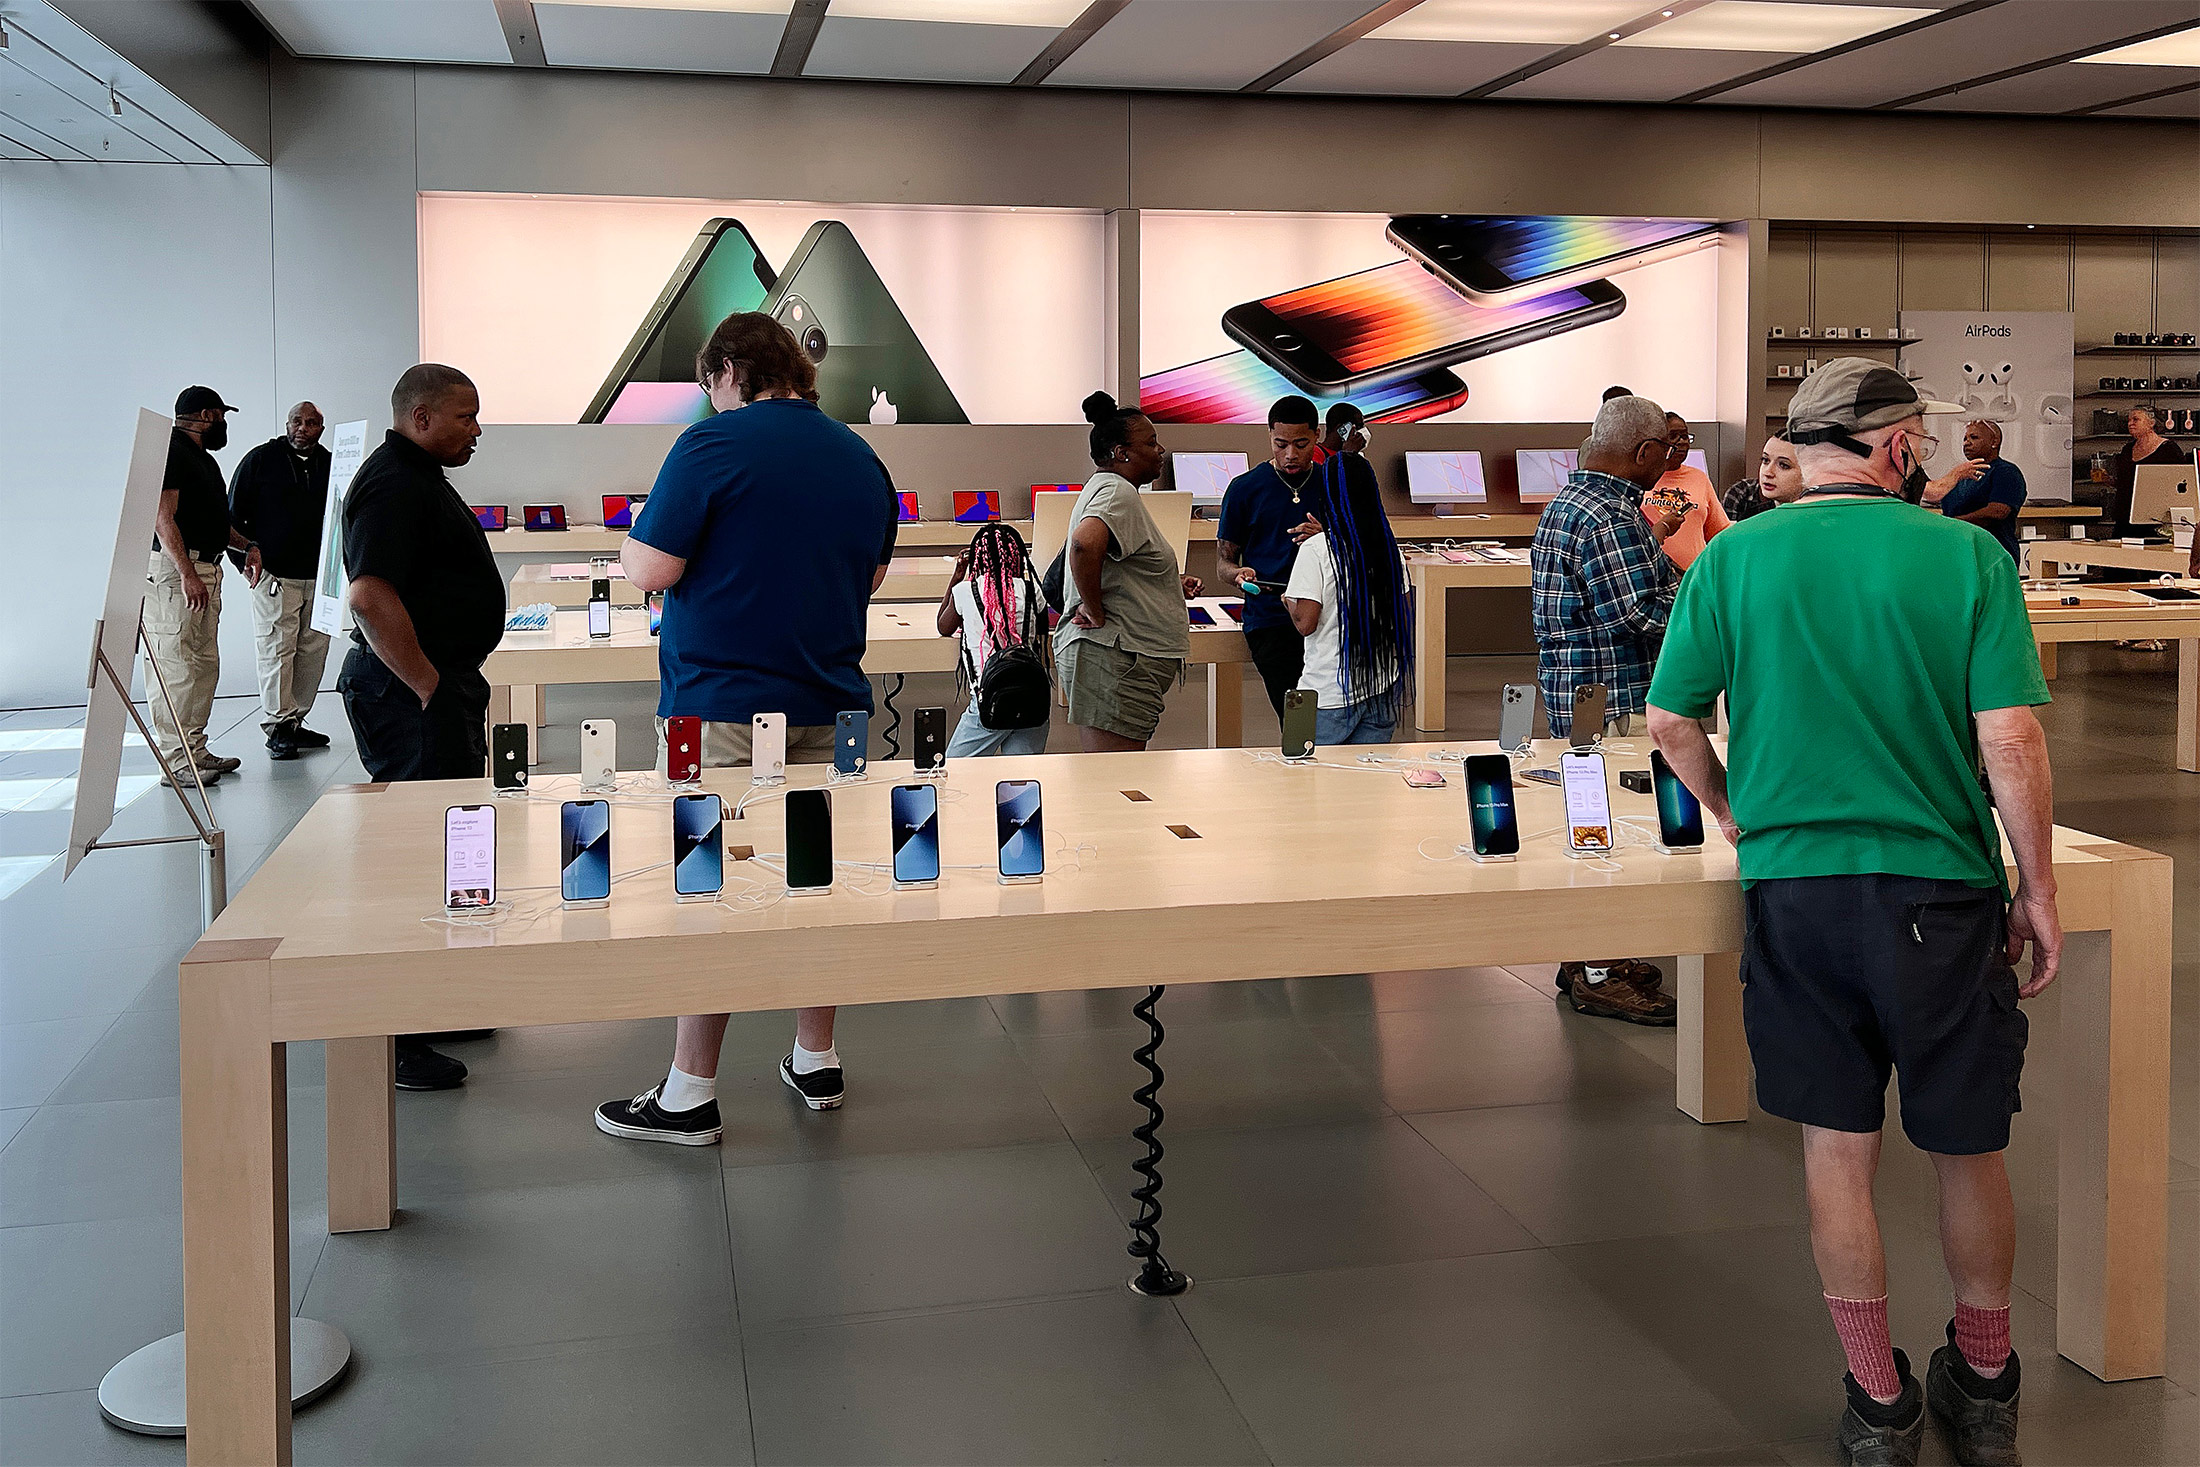 The Week in Tweets: Apple Stores Turn 10